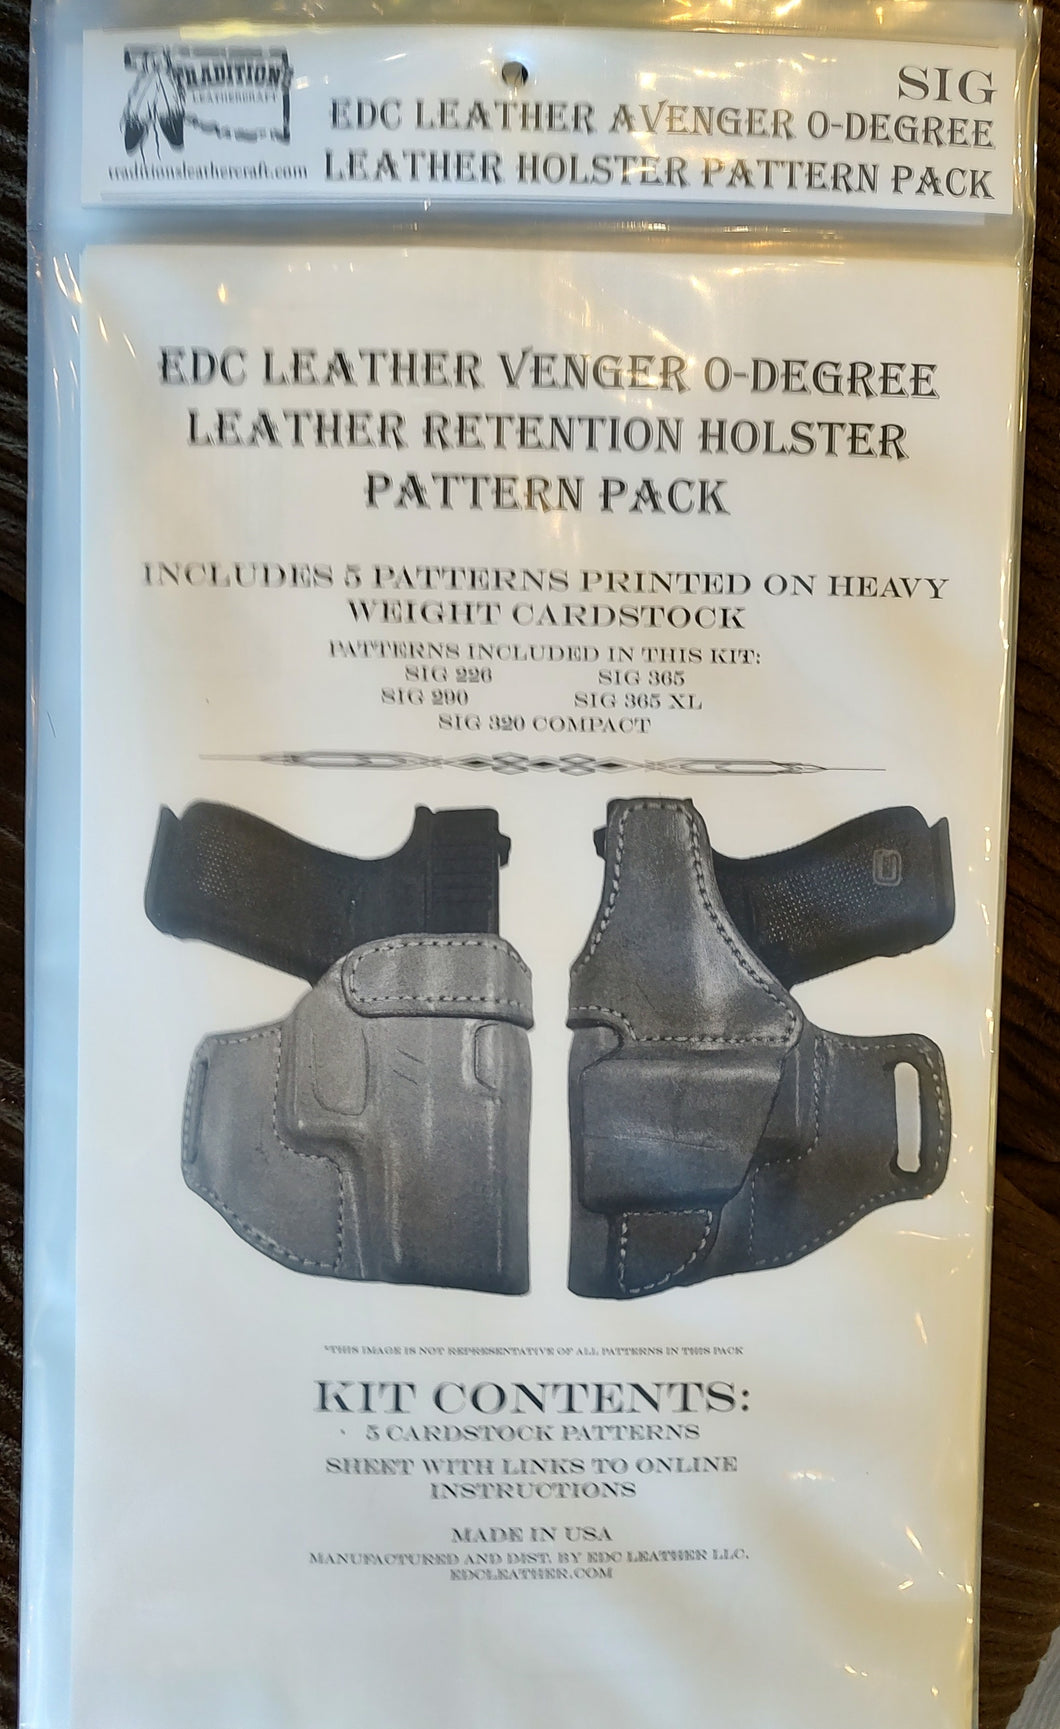 EDC Leather Avenger 0-Degree Leather Retention Holster Pattern Pack